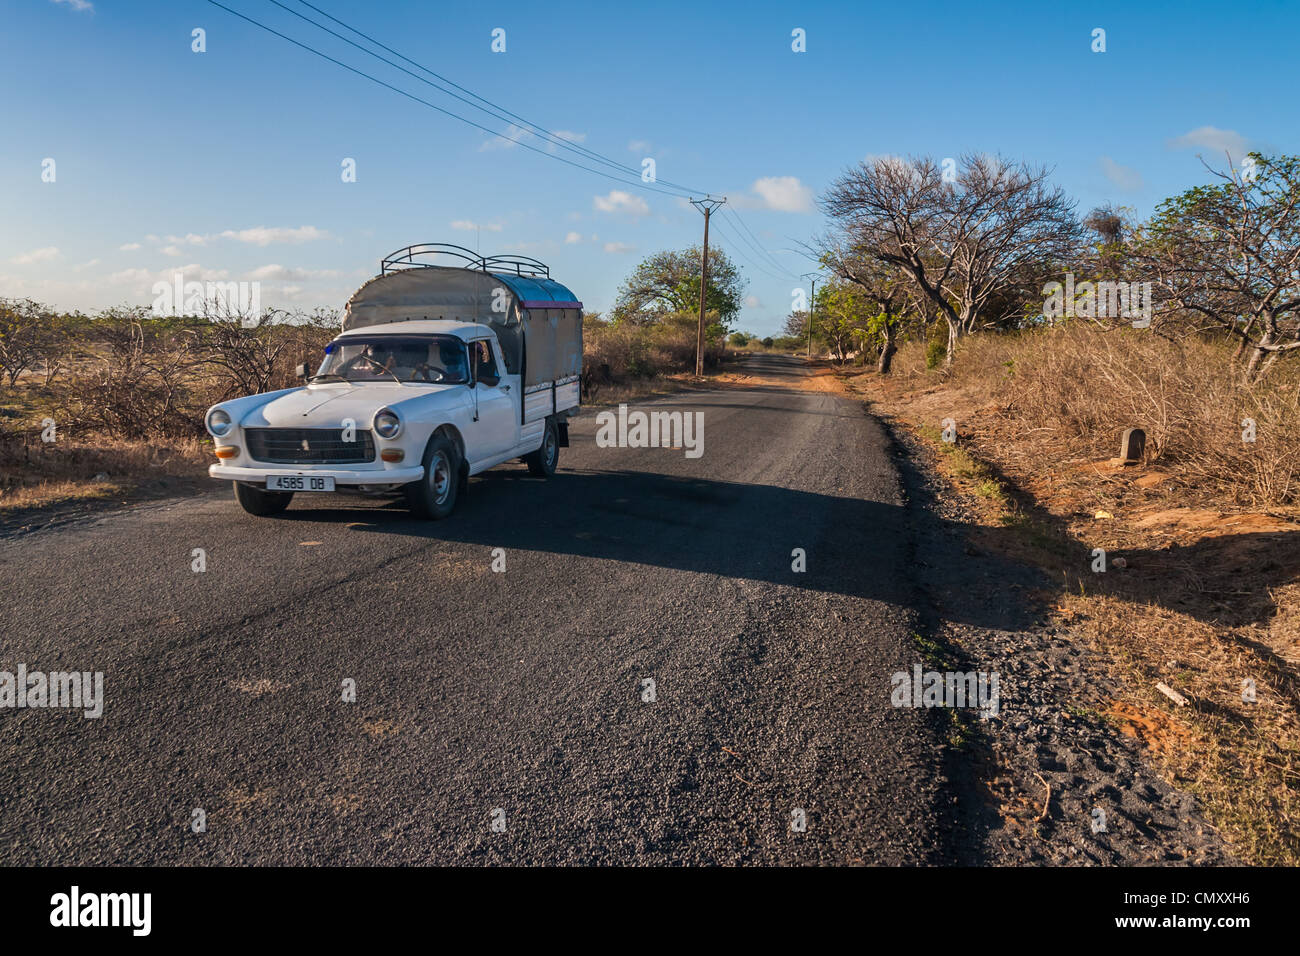 The road of Ramena, near Diego Suarez (Antsiranana), north of Madagascar Stock Photo